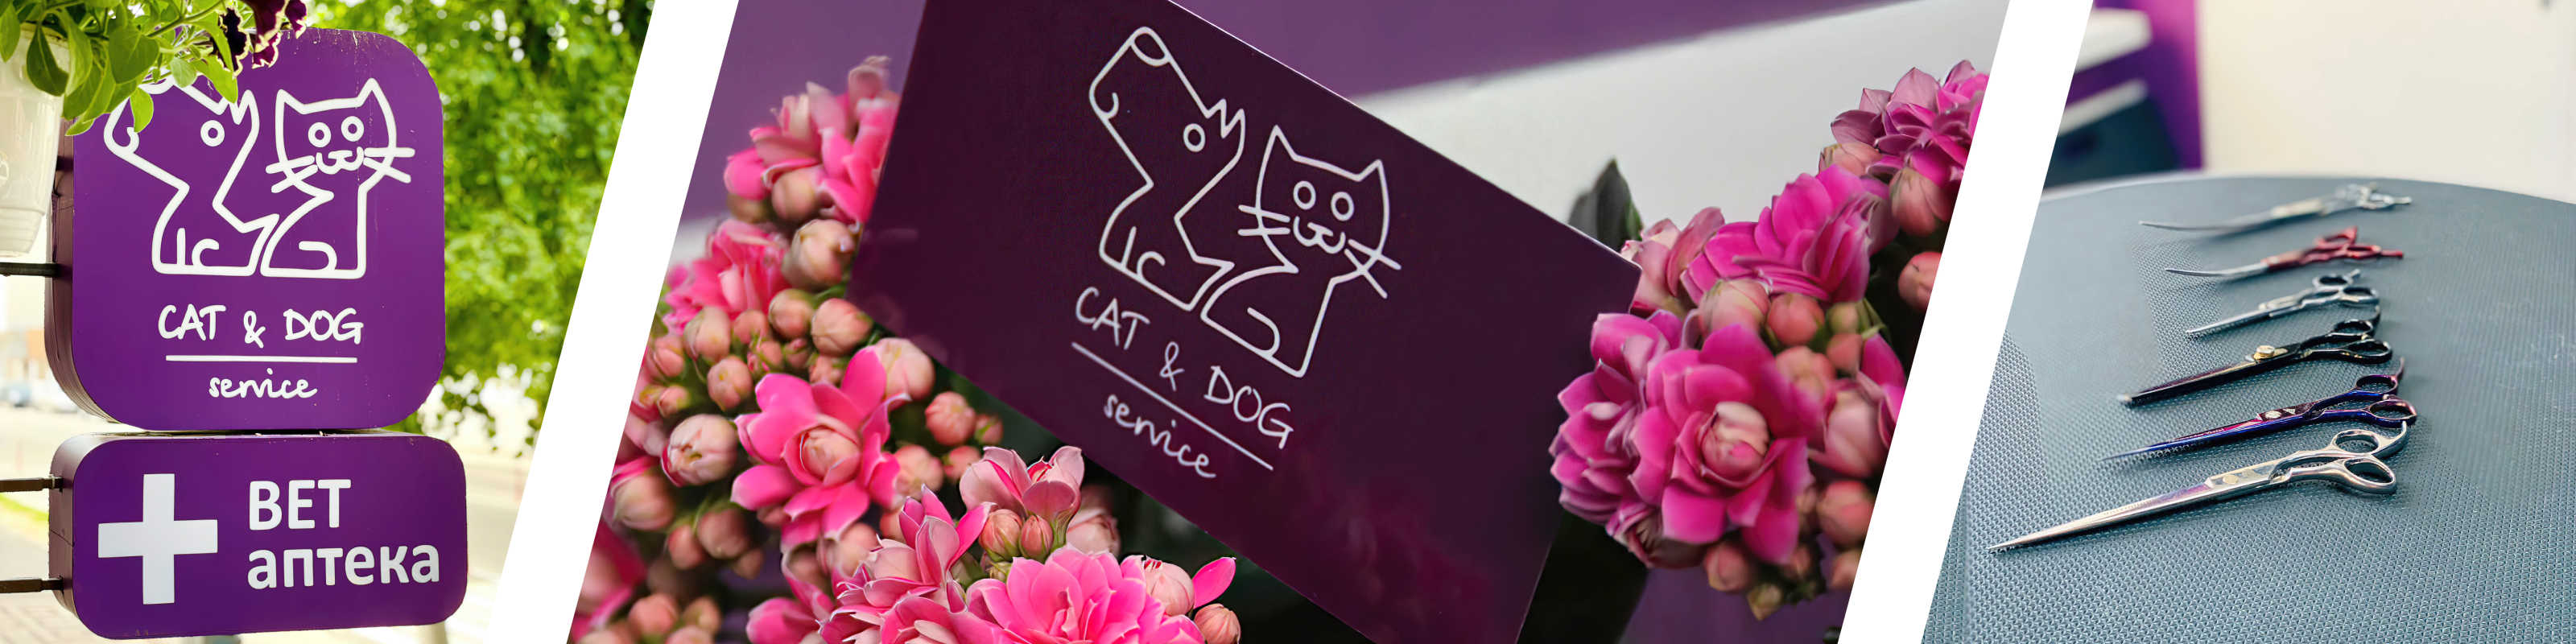 Cat&Dog Service - Ветеринарная клиника, груминг-салон, ветеринарная аптека в Гомеле